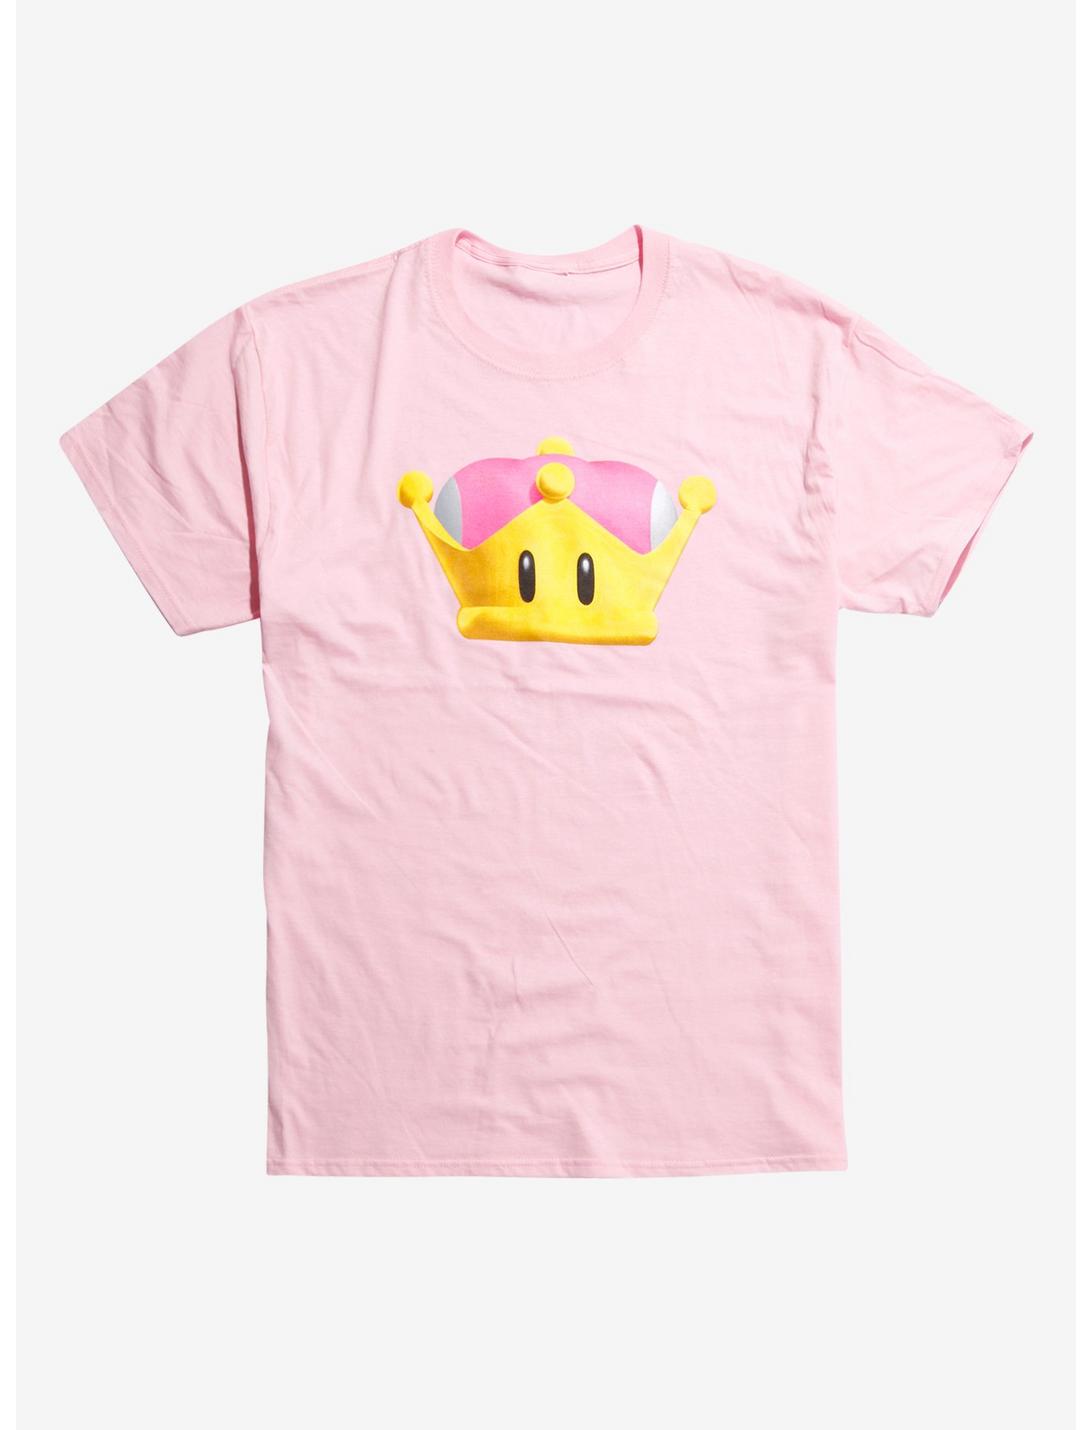 New Super Mario Bros U Deluxe Super Crown T-Shirt, LIGHT PINK, hi-res